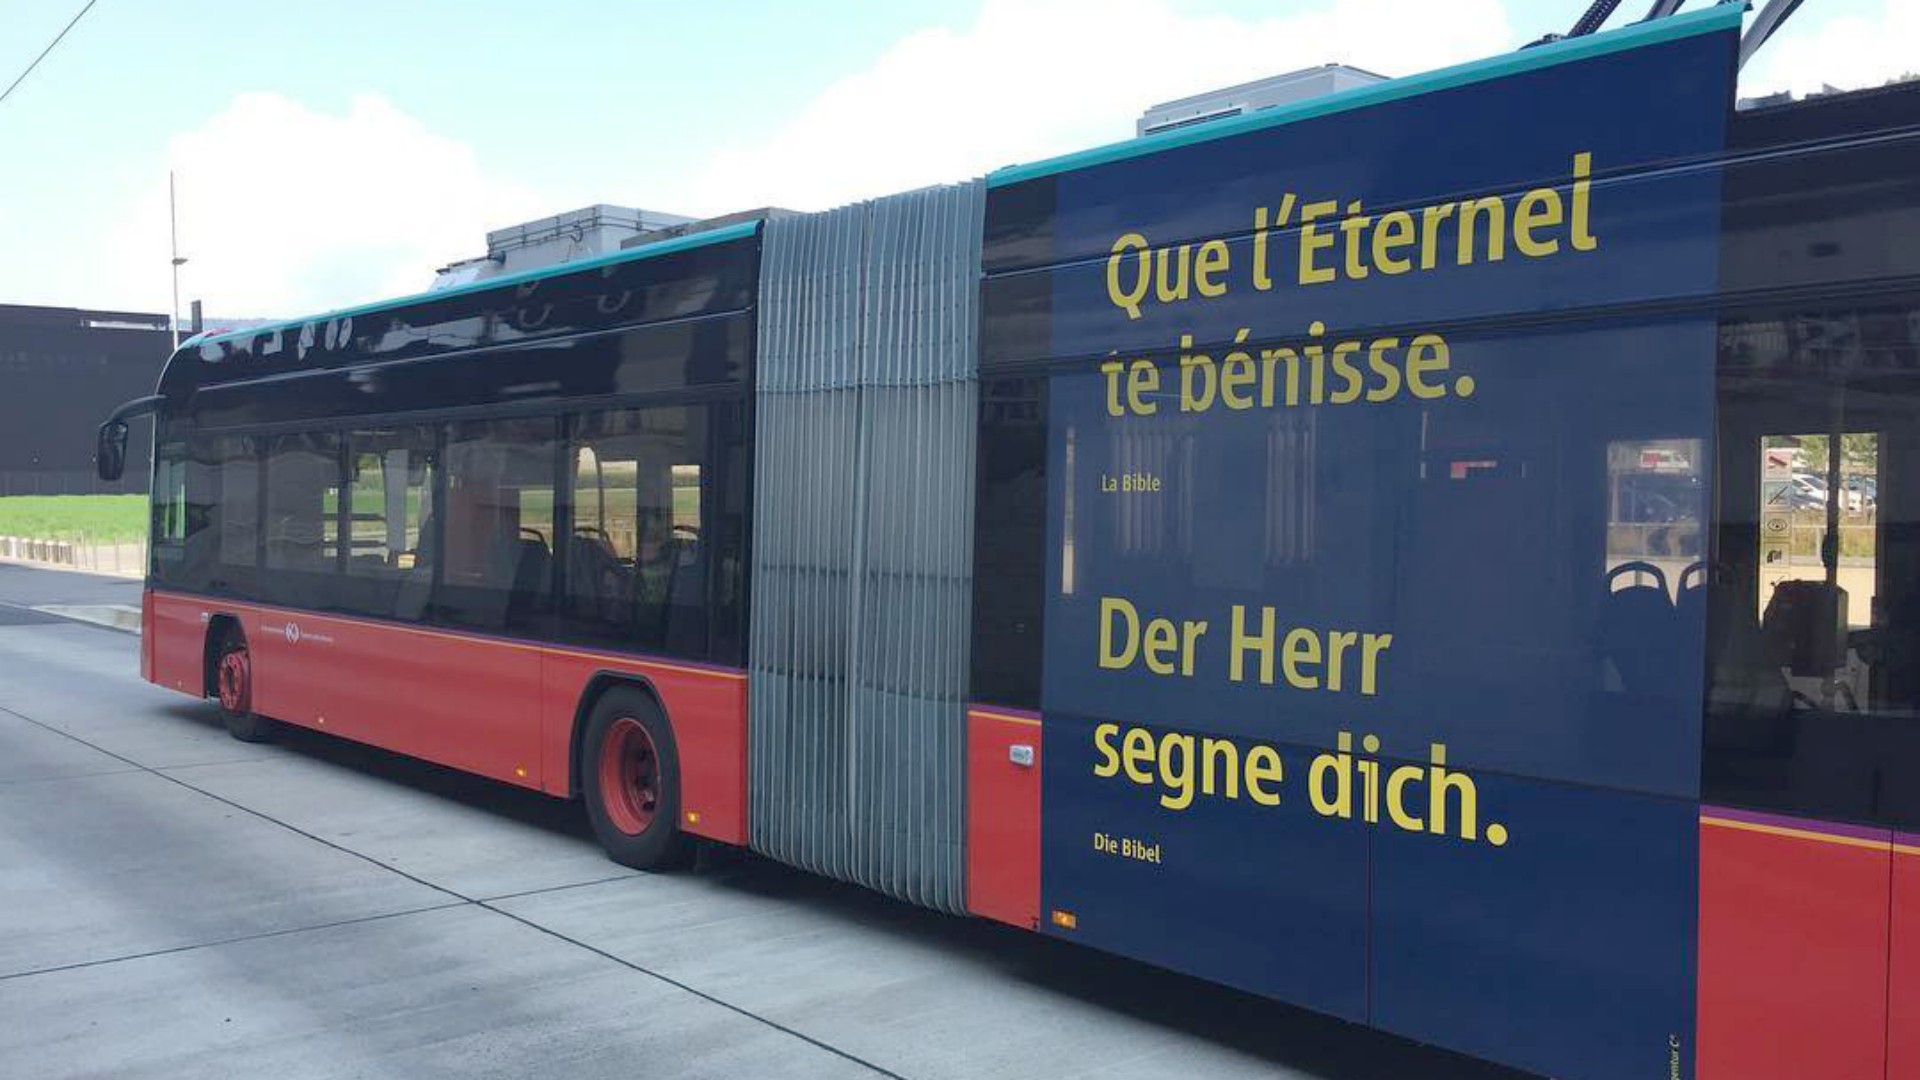 Gli autobus di Bienne riportano versetti della Bibbia